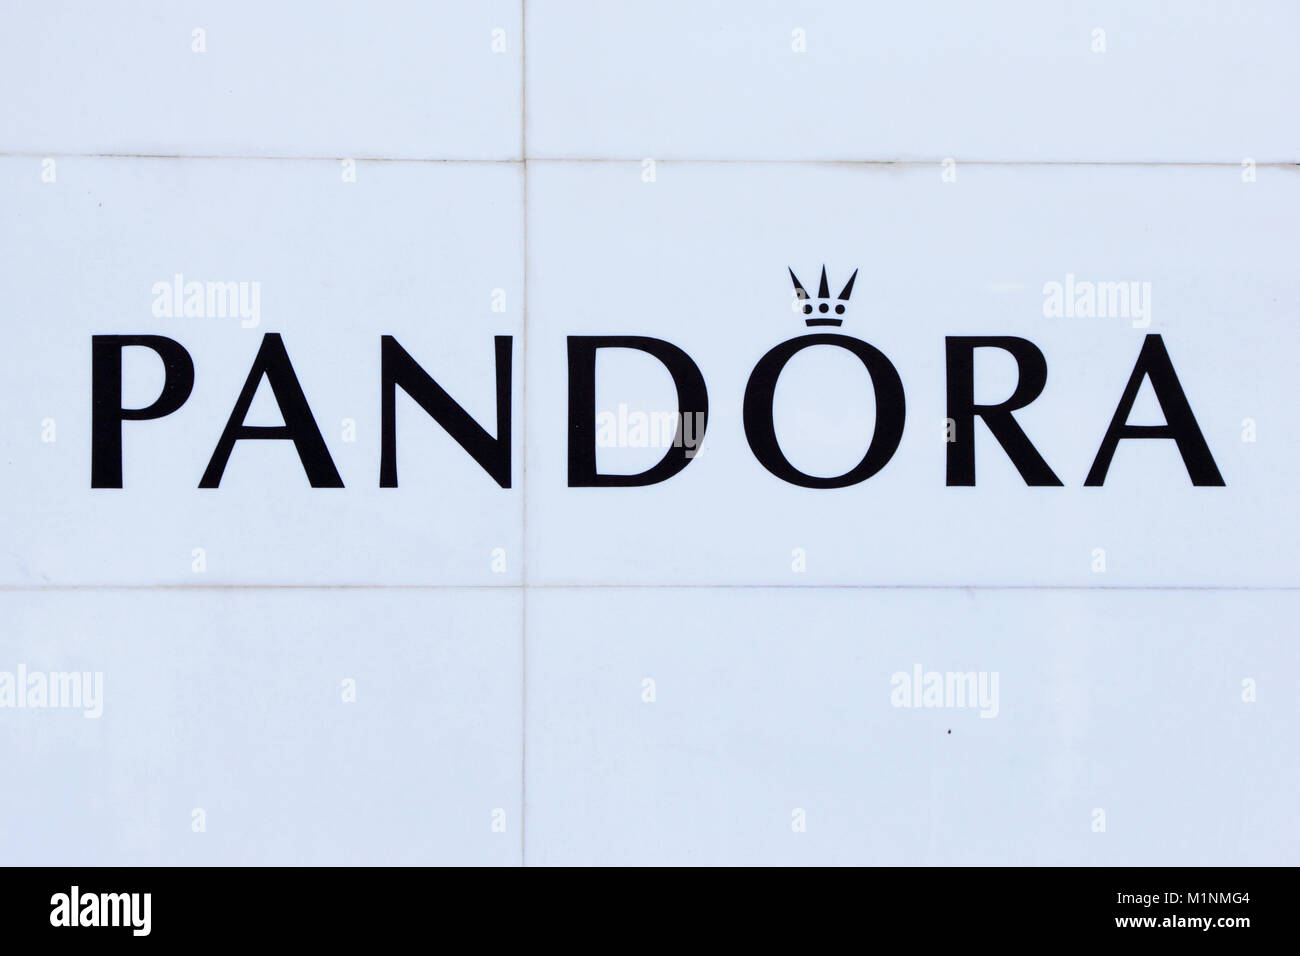 Pandora logo on white tiles Stock Photo - Alamy